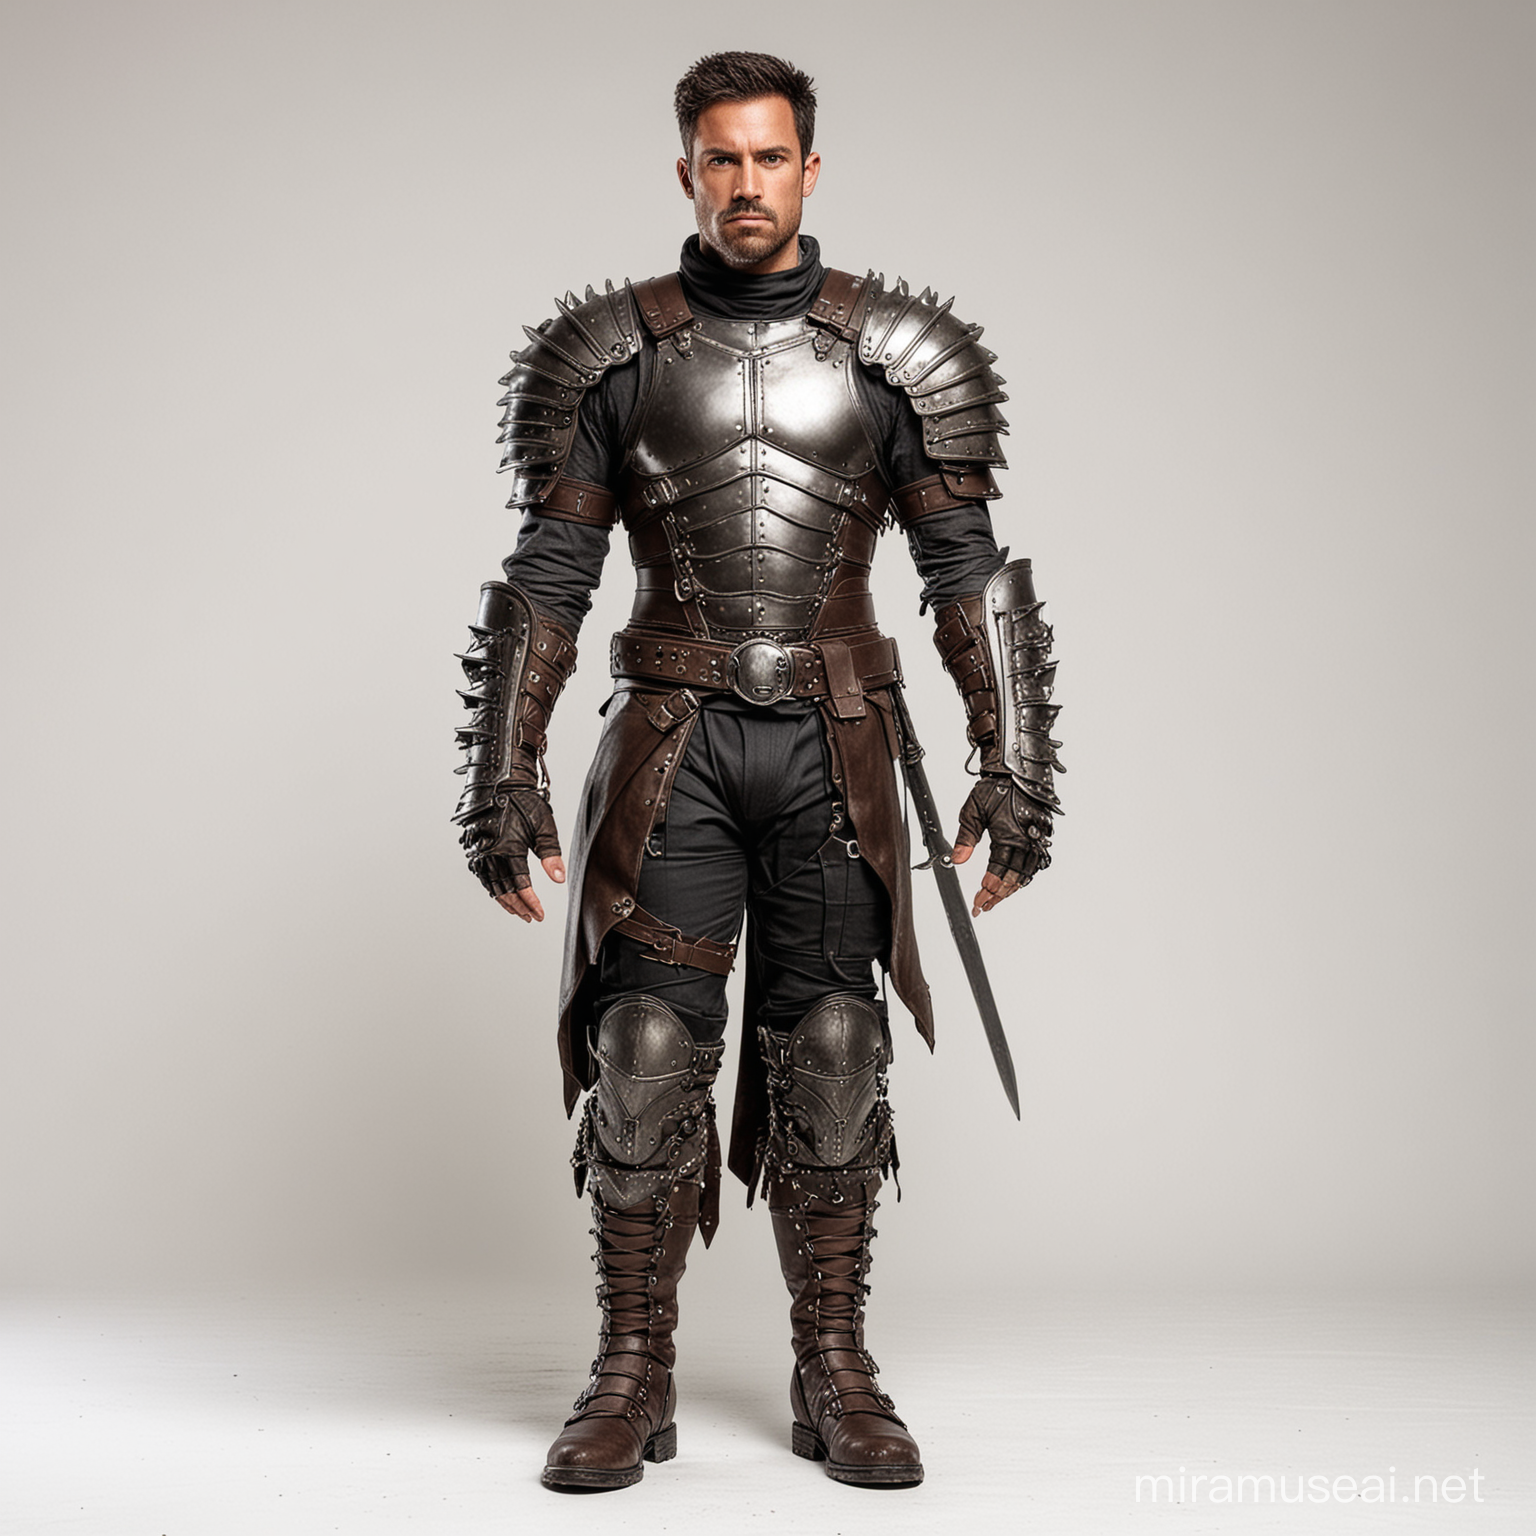 DarkSkinned Male Warrior in Full Leather Armor Against White Background